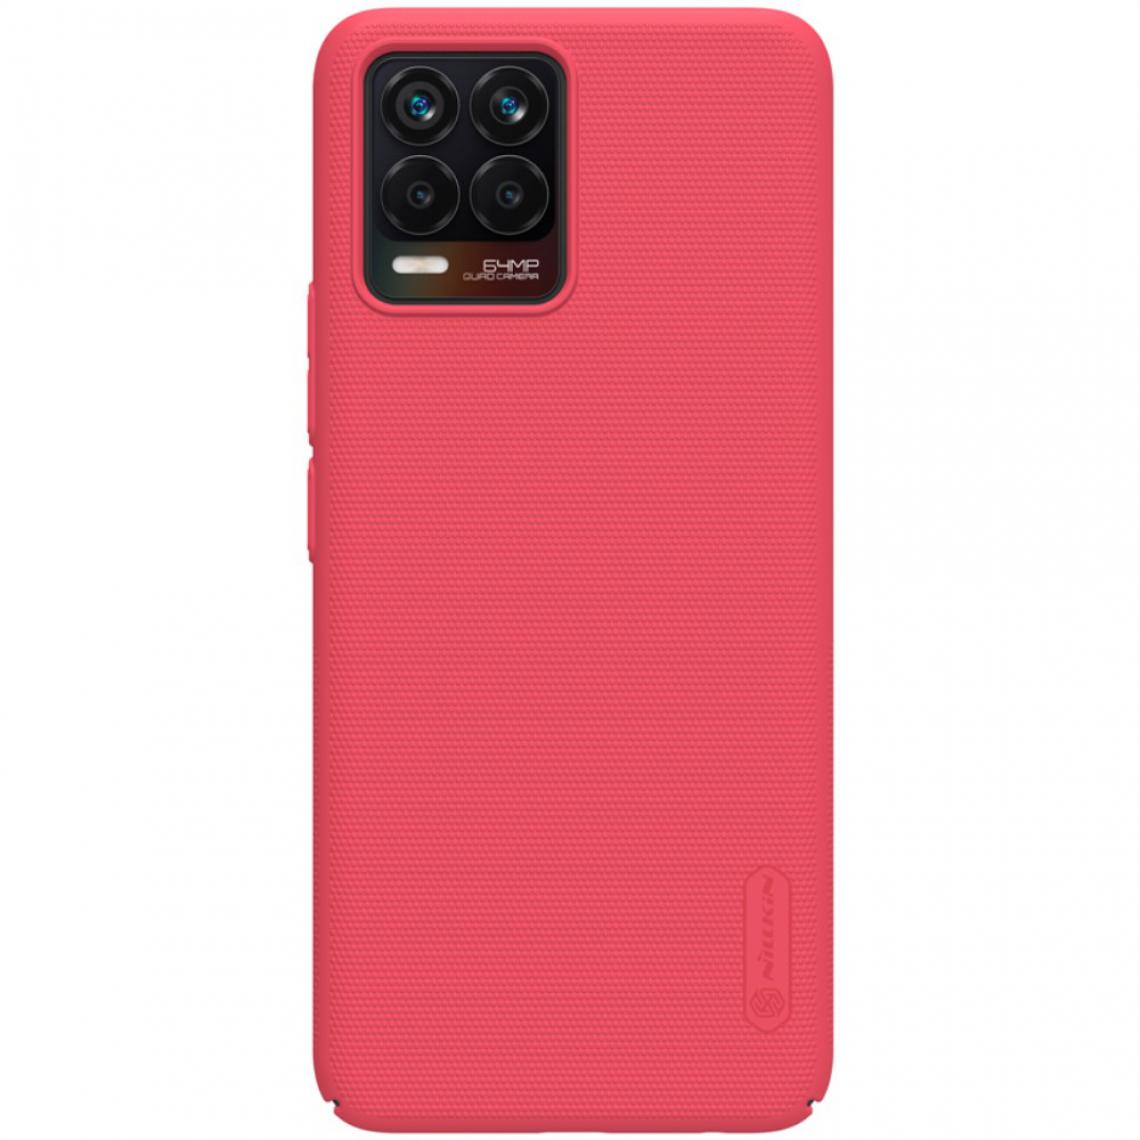 Nillkin - Coque en TPU Surface mate rigide rouge pour votre Realme 8/8 Pro - Coque, étui smartphone